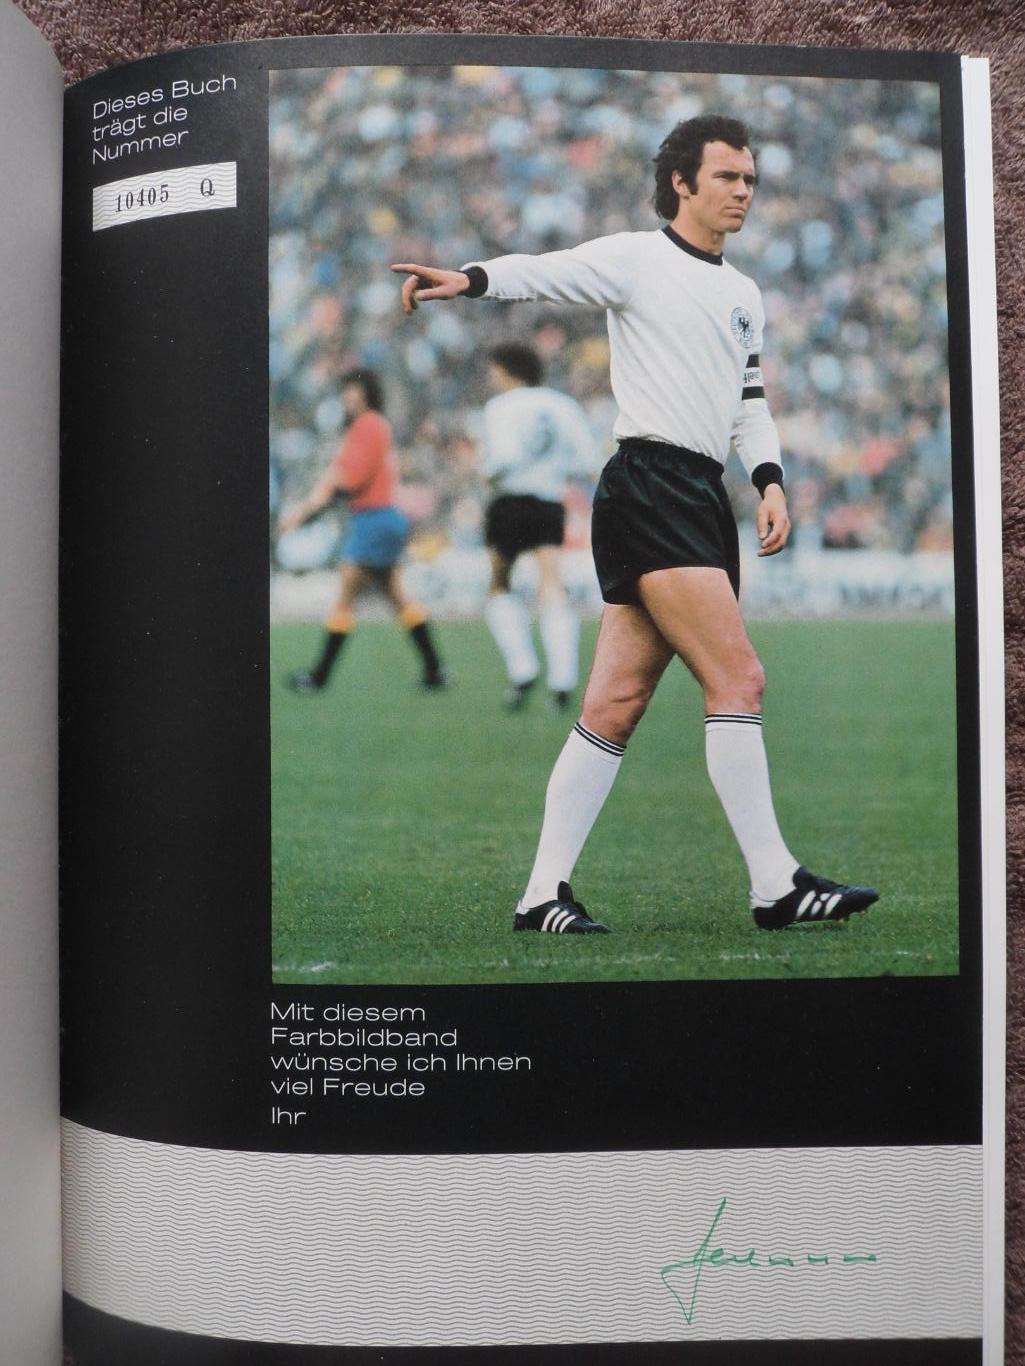 Ф.Беккенбауэр - фотоальбом Чемпионат мира по футболу 1978 (фото команд)+автограф 1